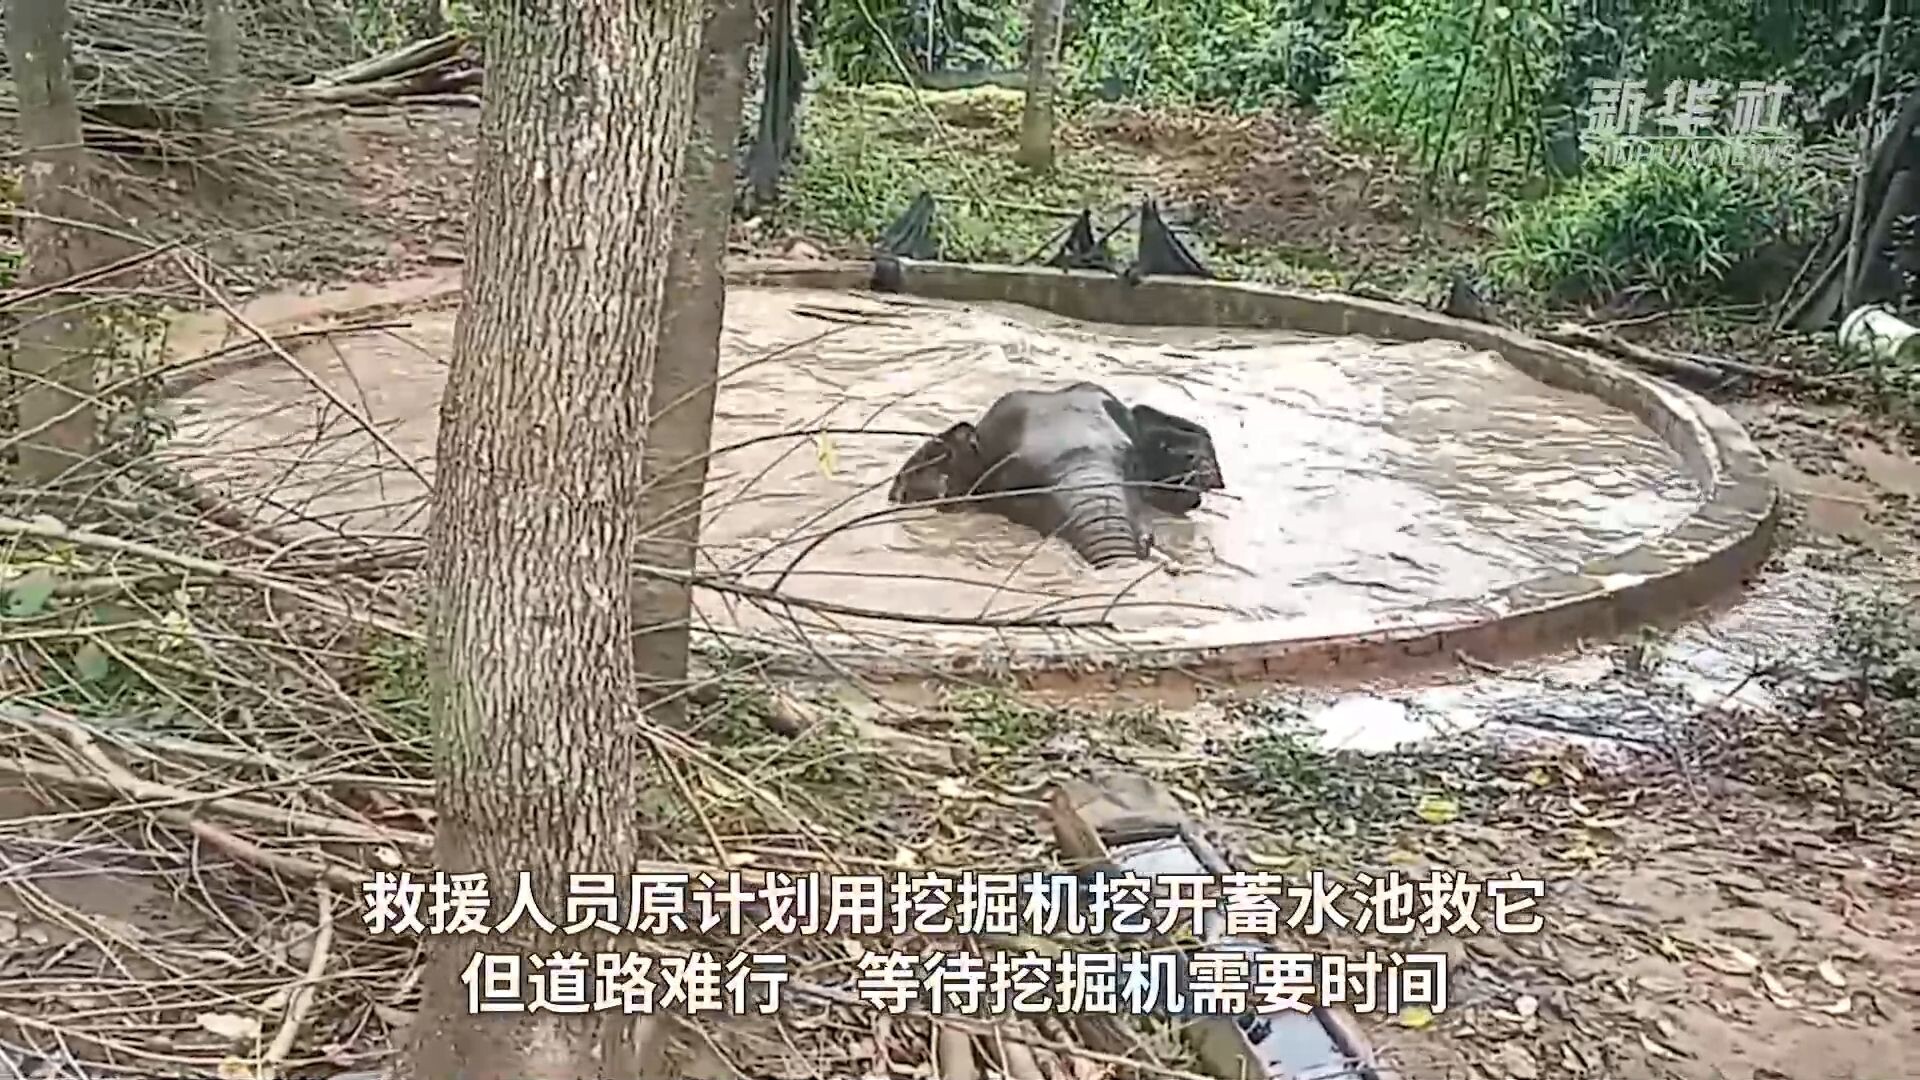 ยูนนานช่วยชีวิต 'ช้างป่า' หนัก 2.5 ตัน พลัดตกอ่างเก็บน้ำ